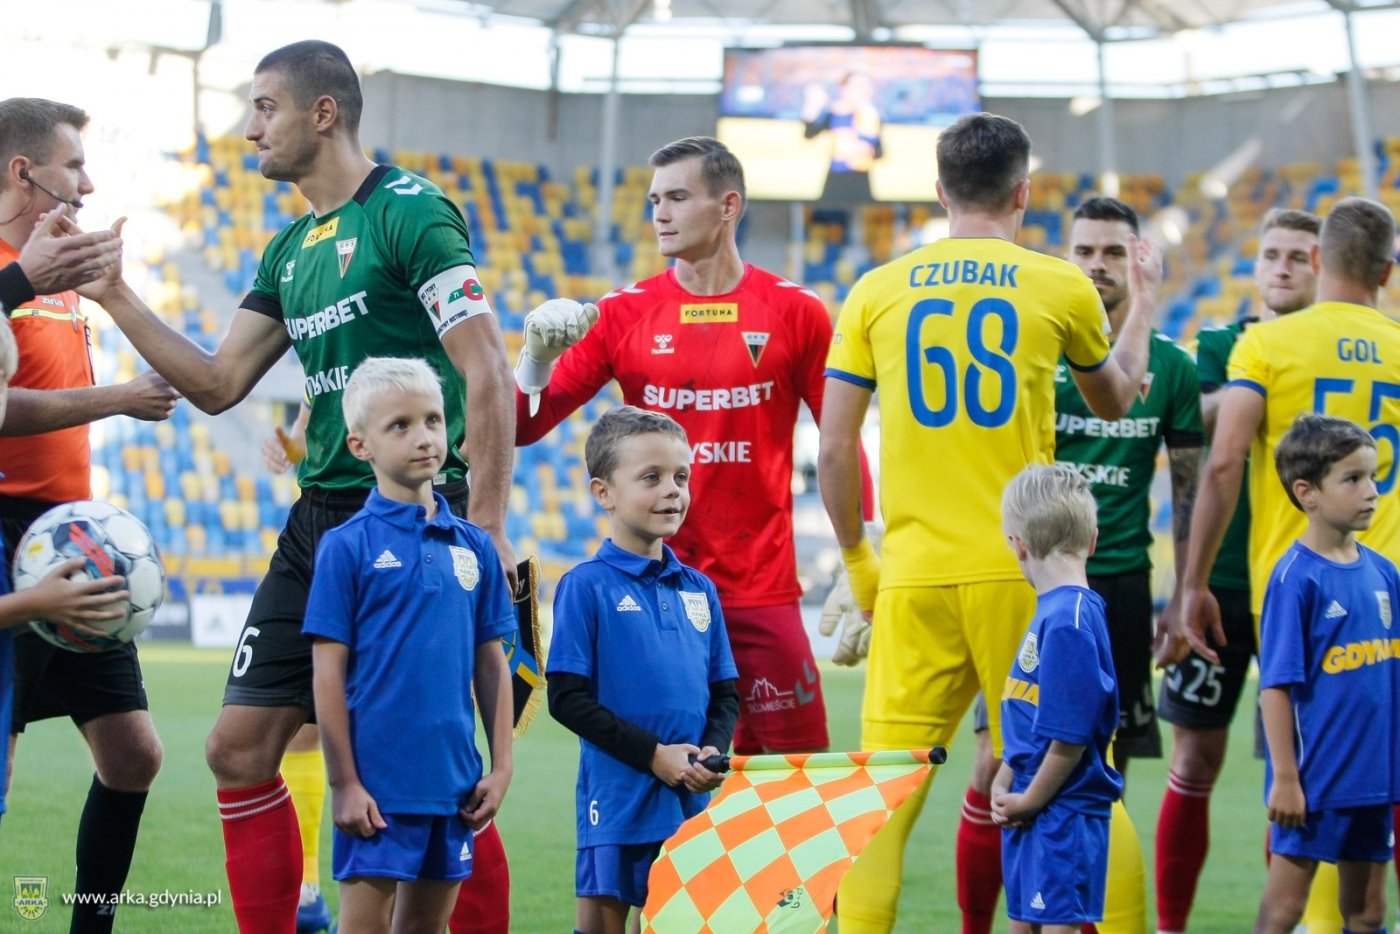 Piłkarze Arki Gdynia i dzieci przed meczem na murawie stadionu miejskiego w Gdyni